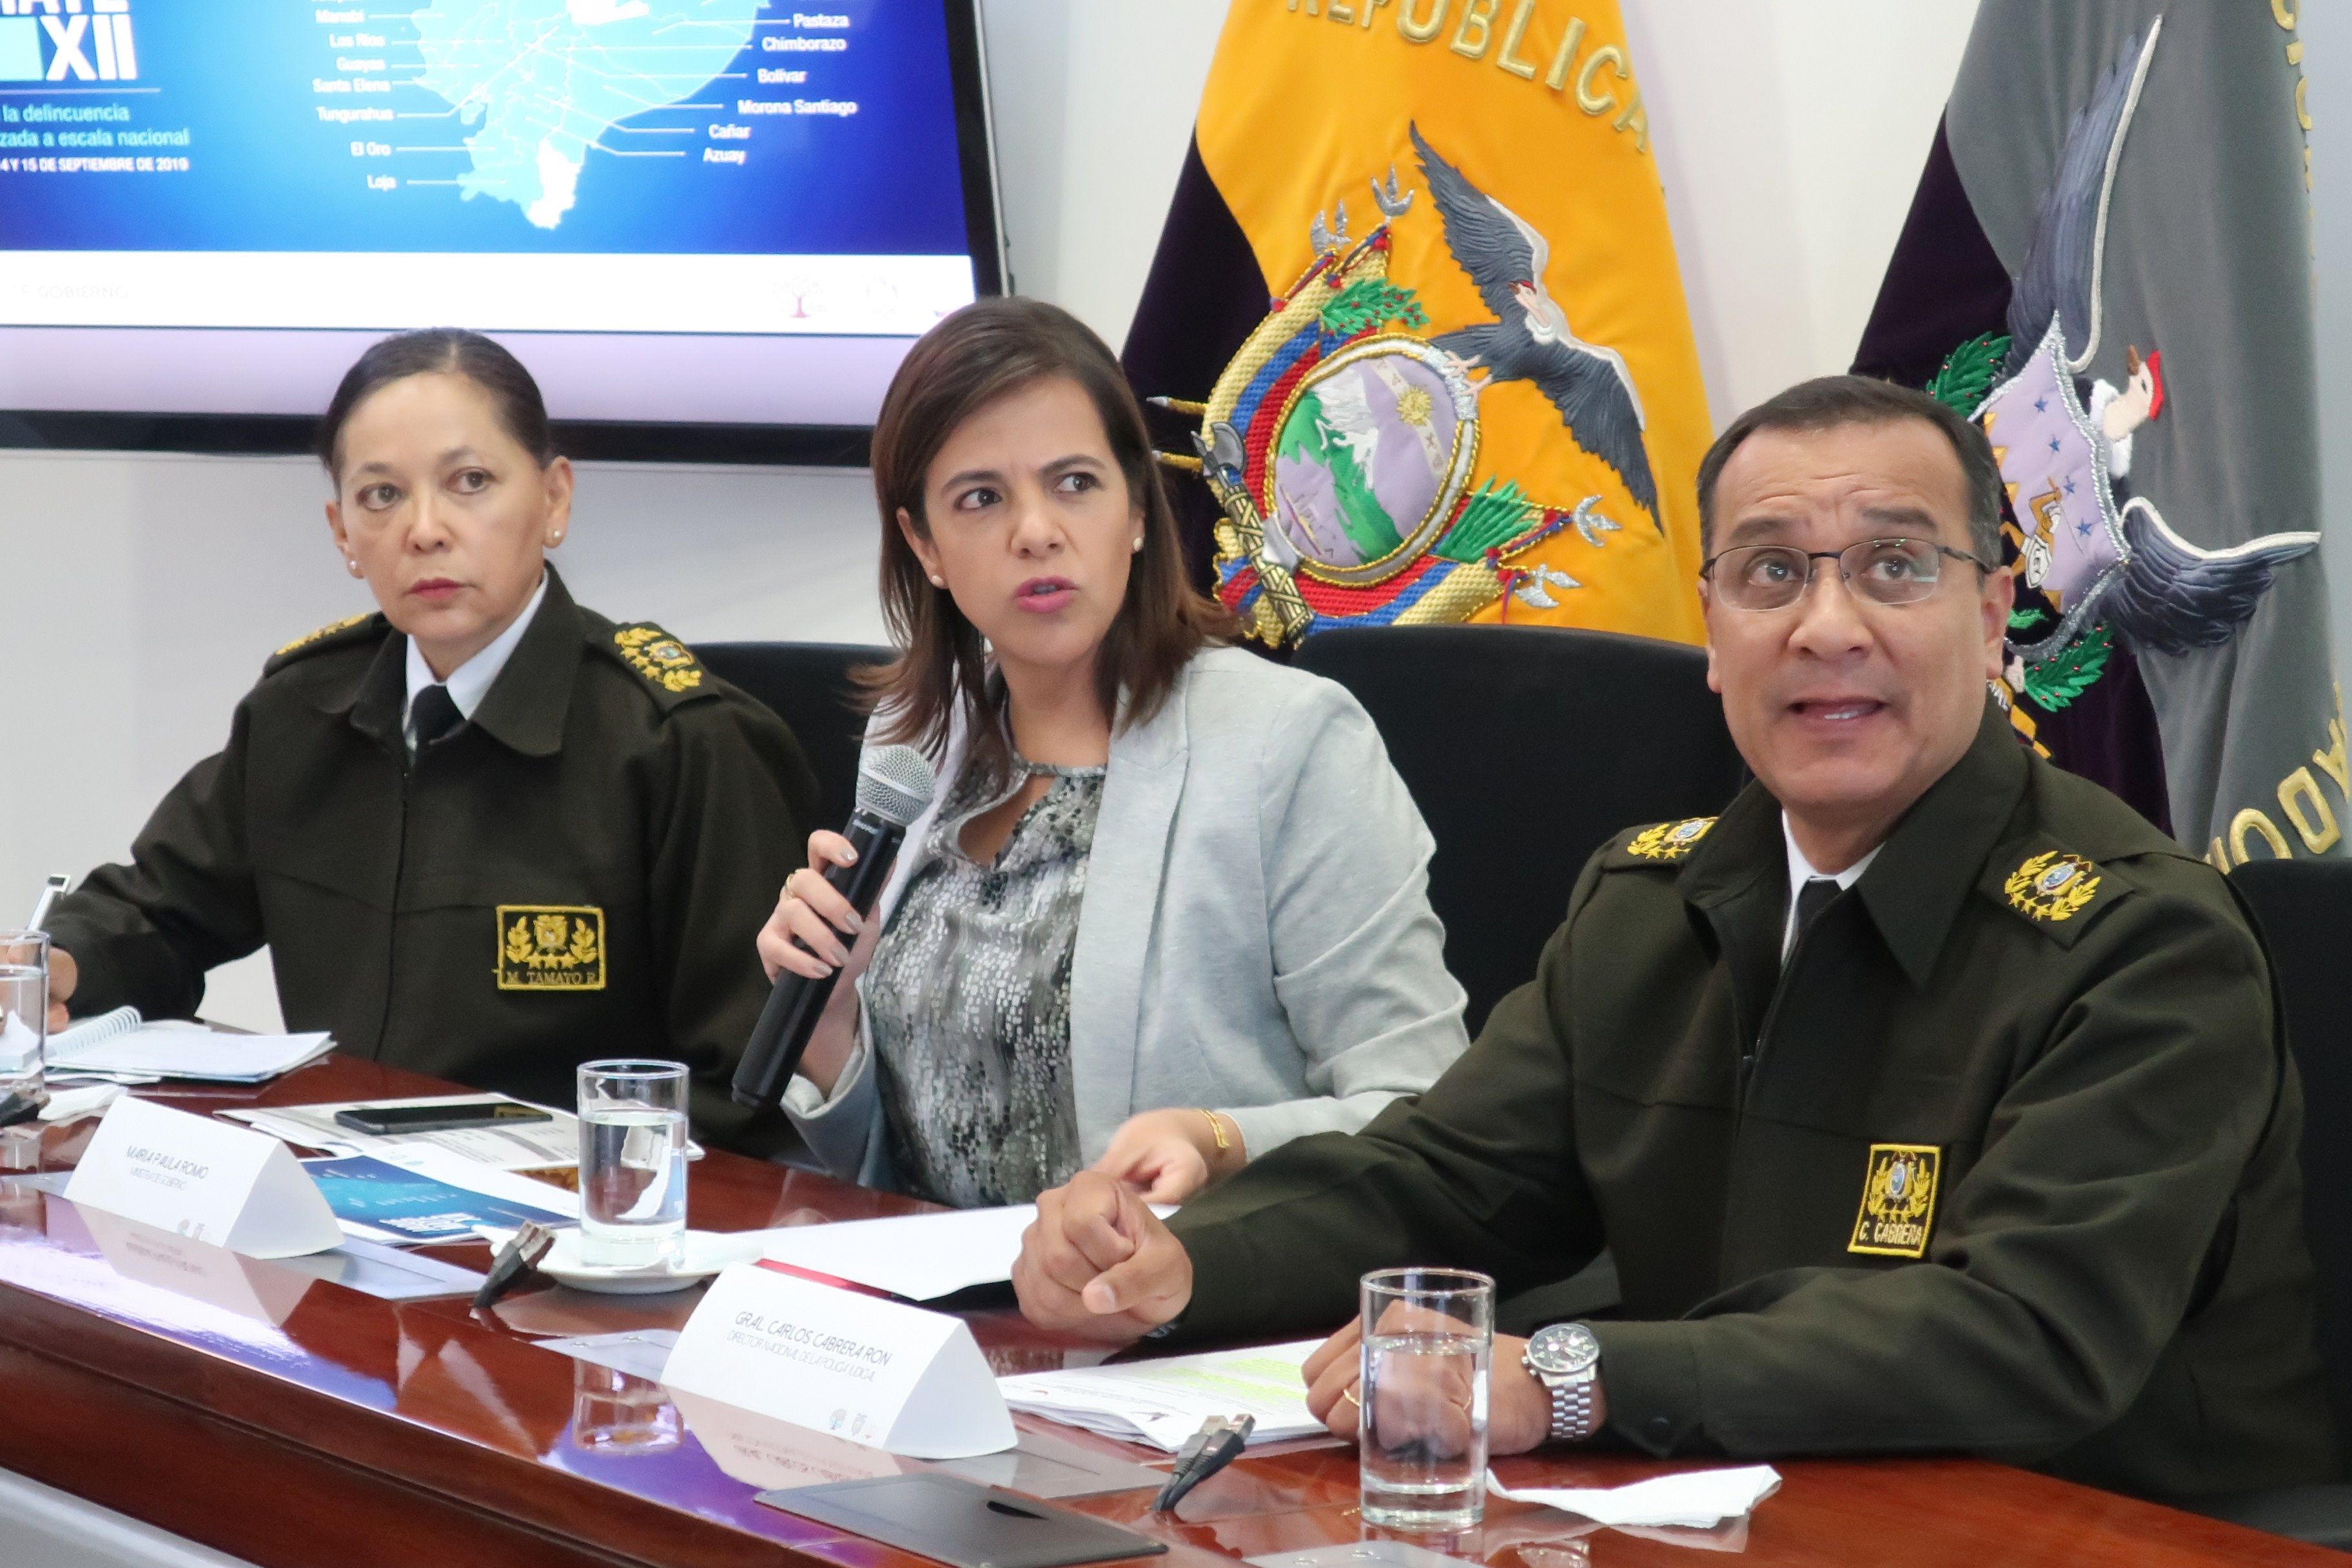  La ministra ecuatoriana del Interior, María Paula Romo, da declaraciones sobre la posible filtración masiva de datos en Ecuador. (Foto Prensa Libre: EFE)